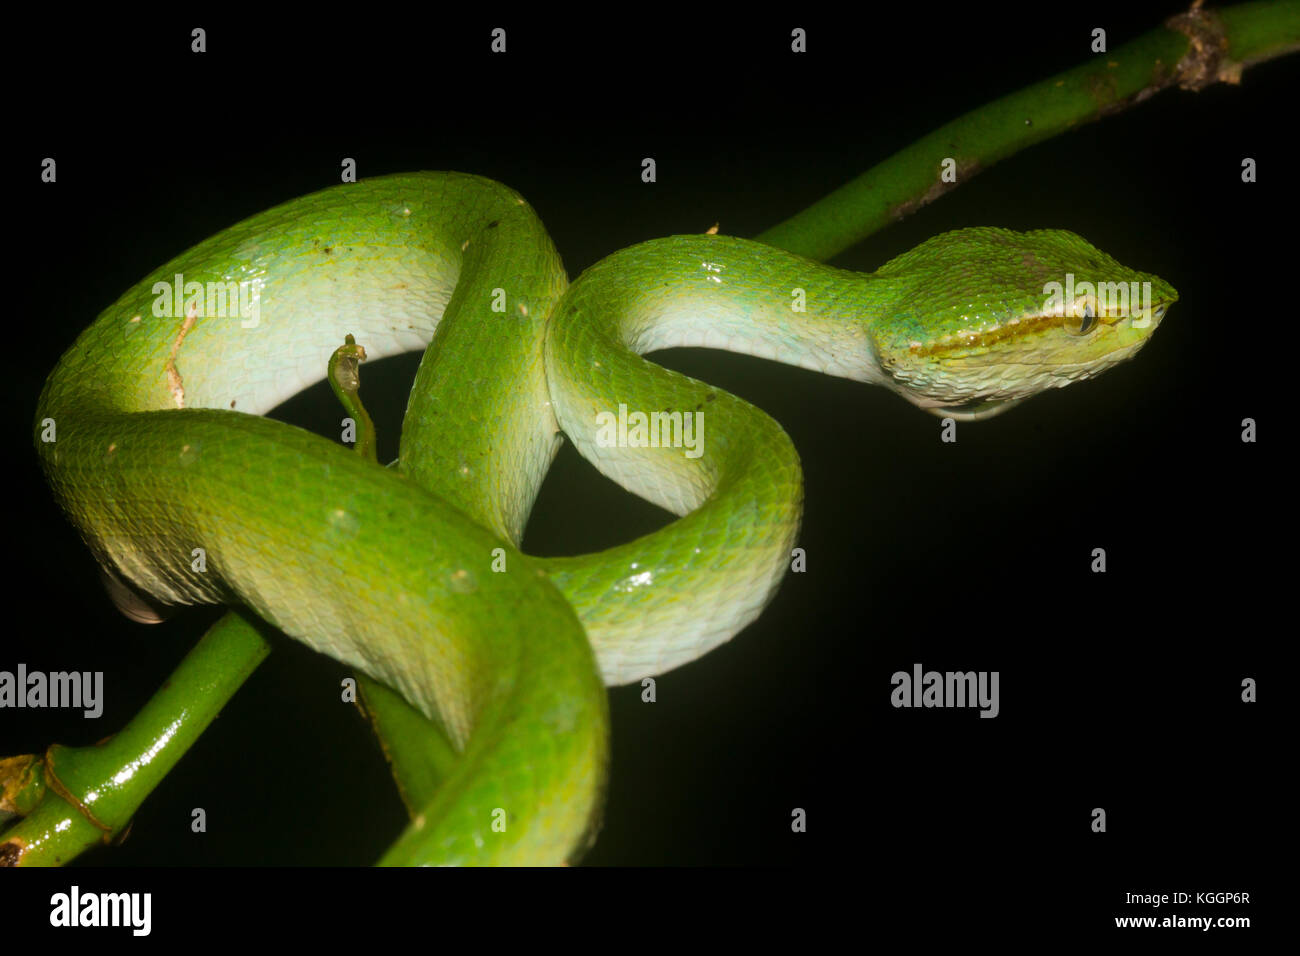 Borneo pit Viper, tropidolaemus subannulatus ist die häufigste giftige Schlange leben im Regenwald von Borneo. Gunung Mulu National Park, Sarawak. Stockfoto